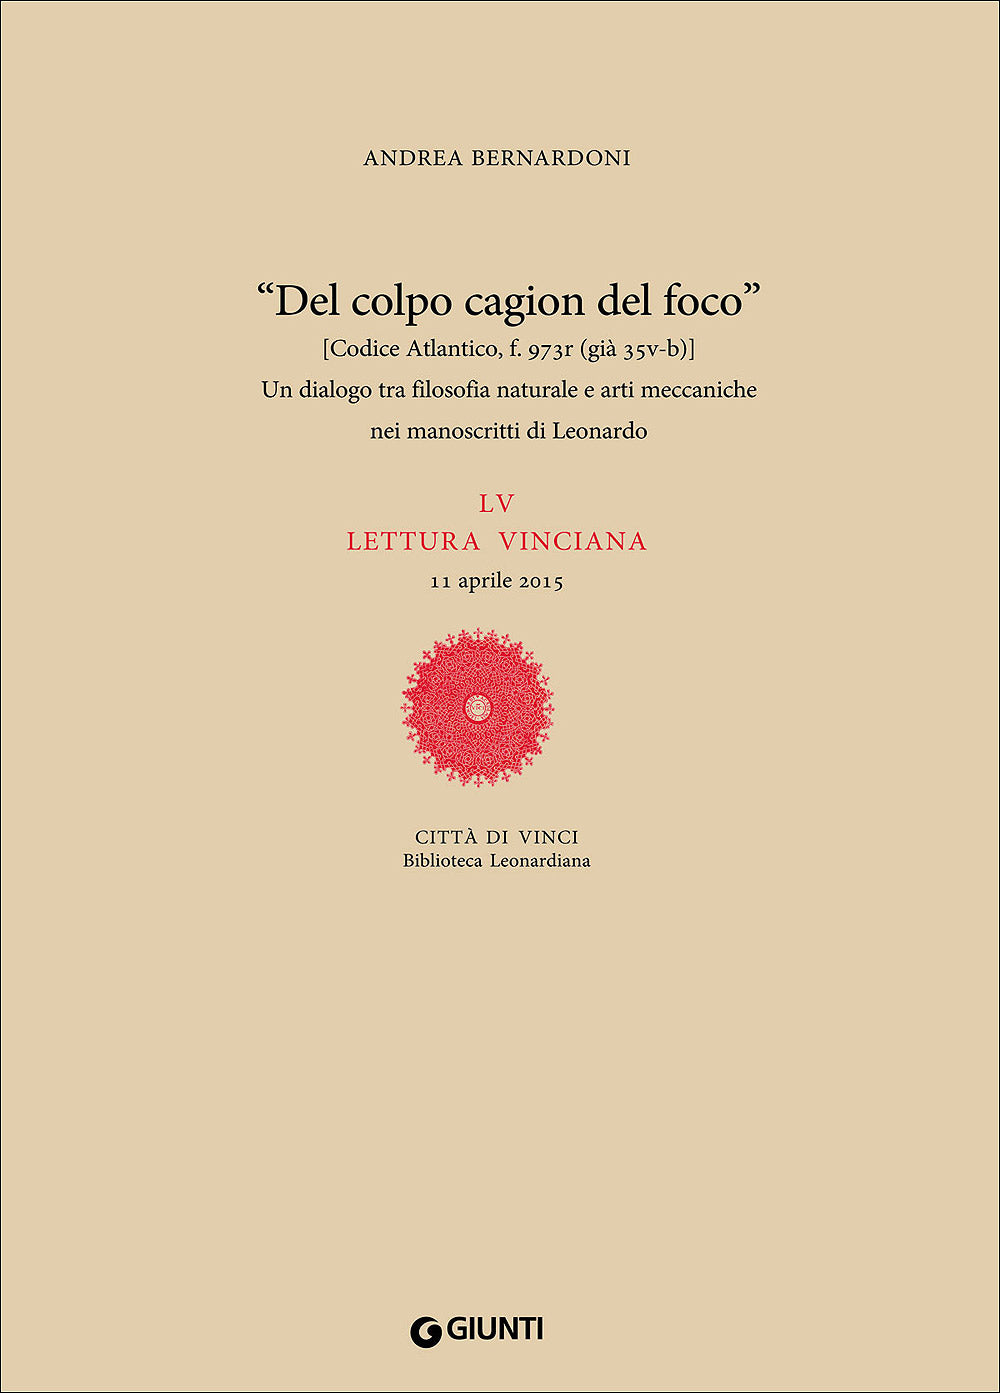 Un dialogo tra filosofia naturale e arti meccaniche nei manoscritti di Leonardo::LV lettura vinciana - 11 aprile 2015